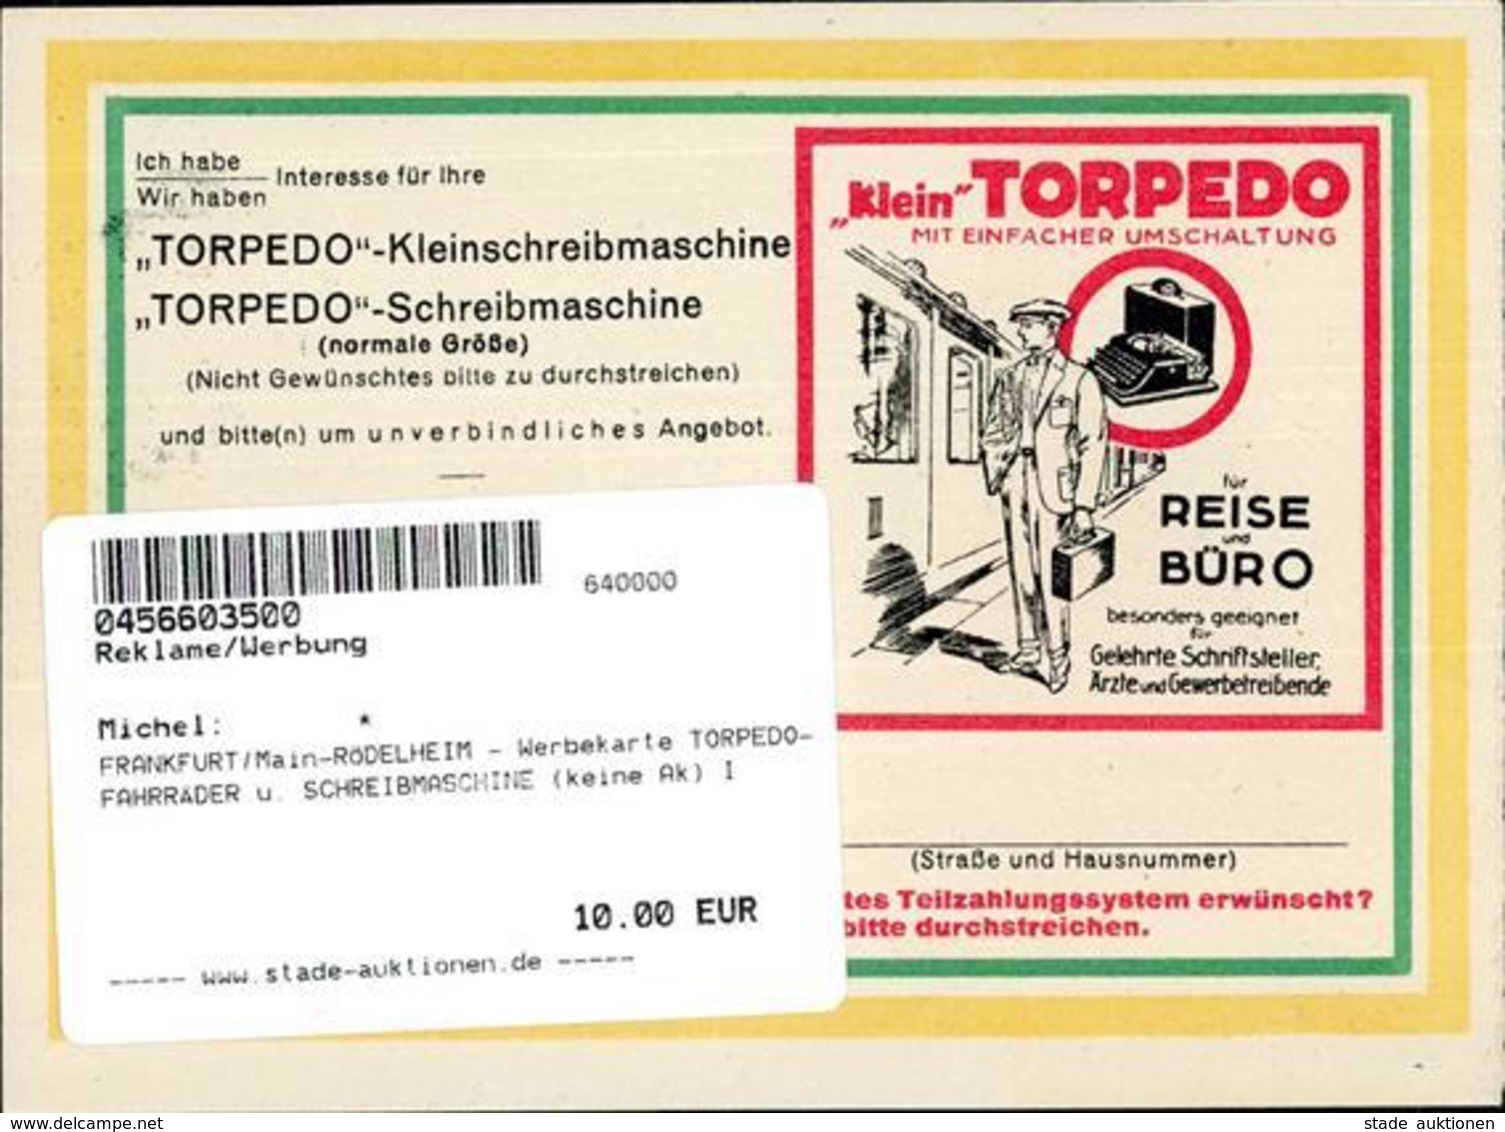 FRANKFURT/Main-RÖDELHEIM - Werbekarte TORPEDO-FAHRRÄDER U. SCHREIBMASCHINE (keine Ak) I - Publicidad